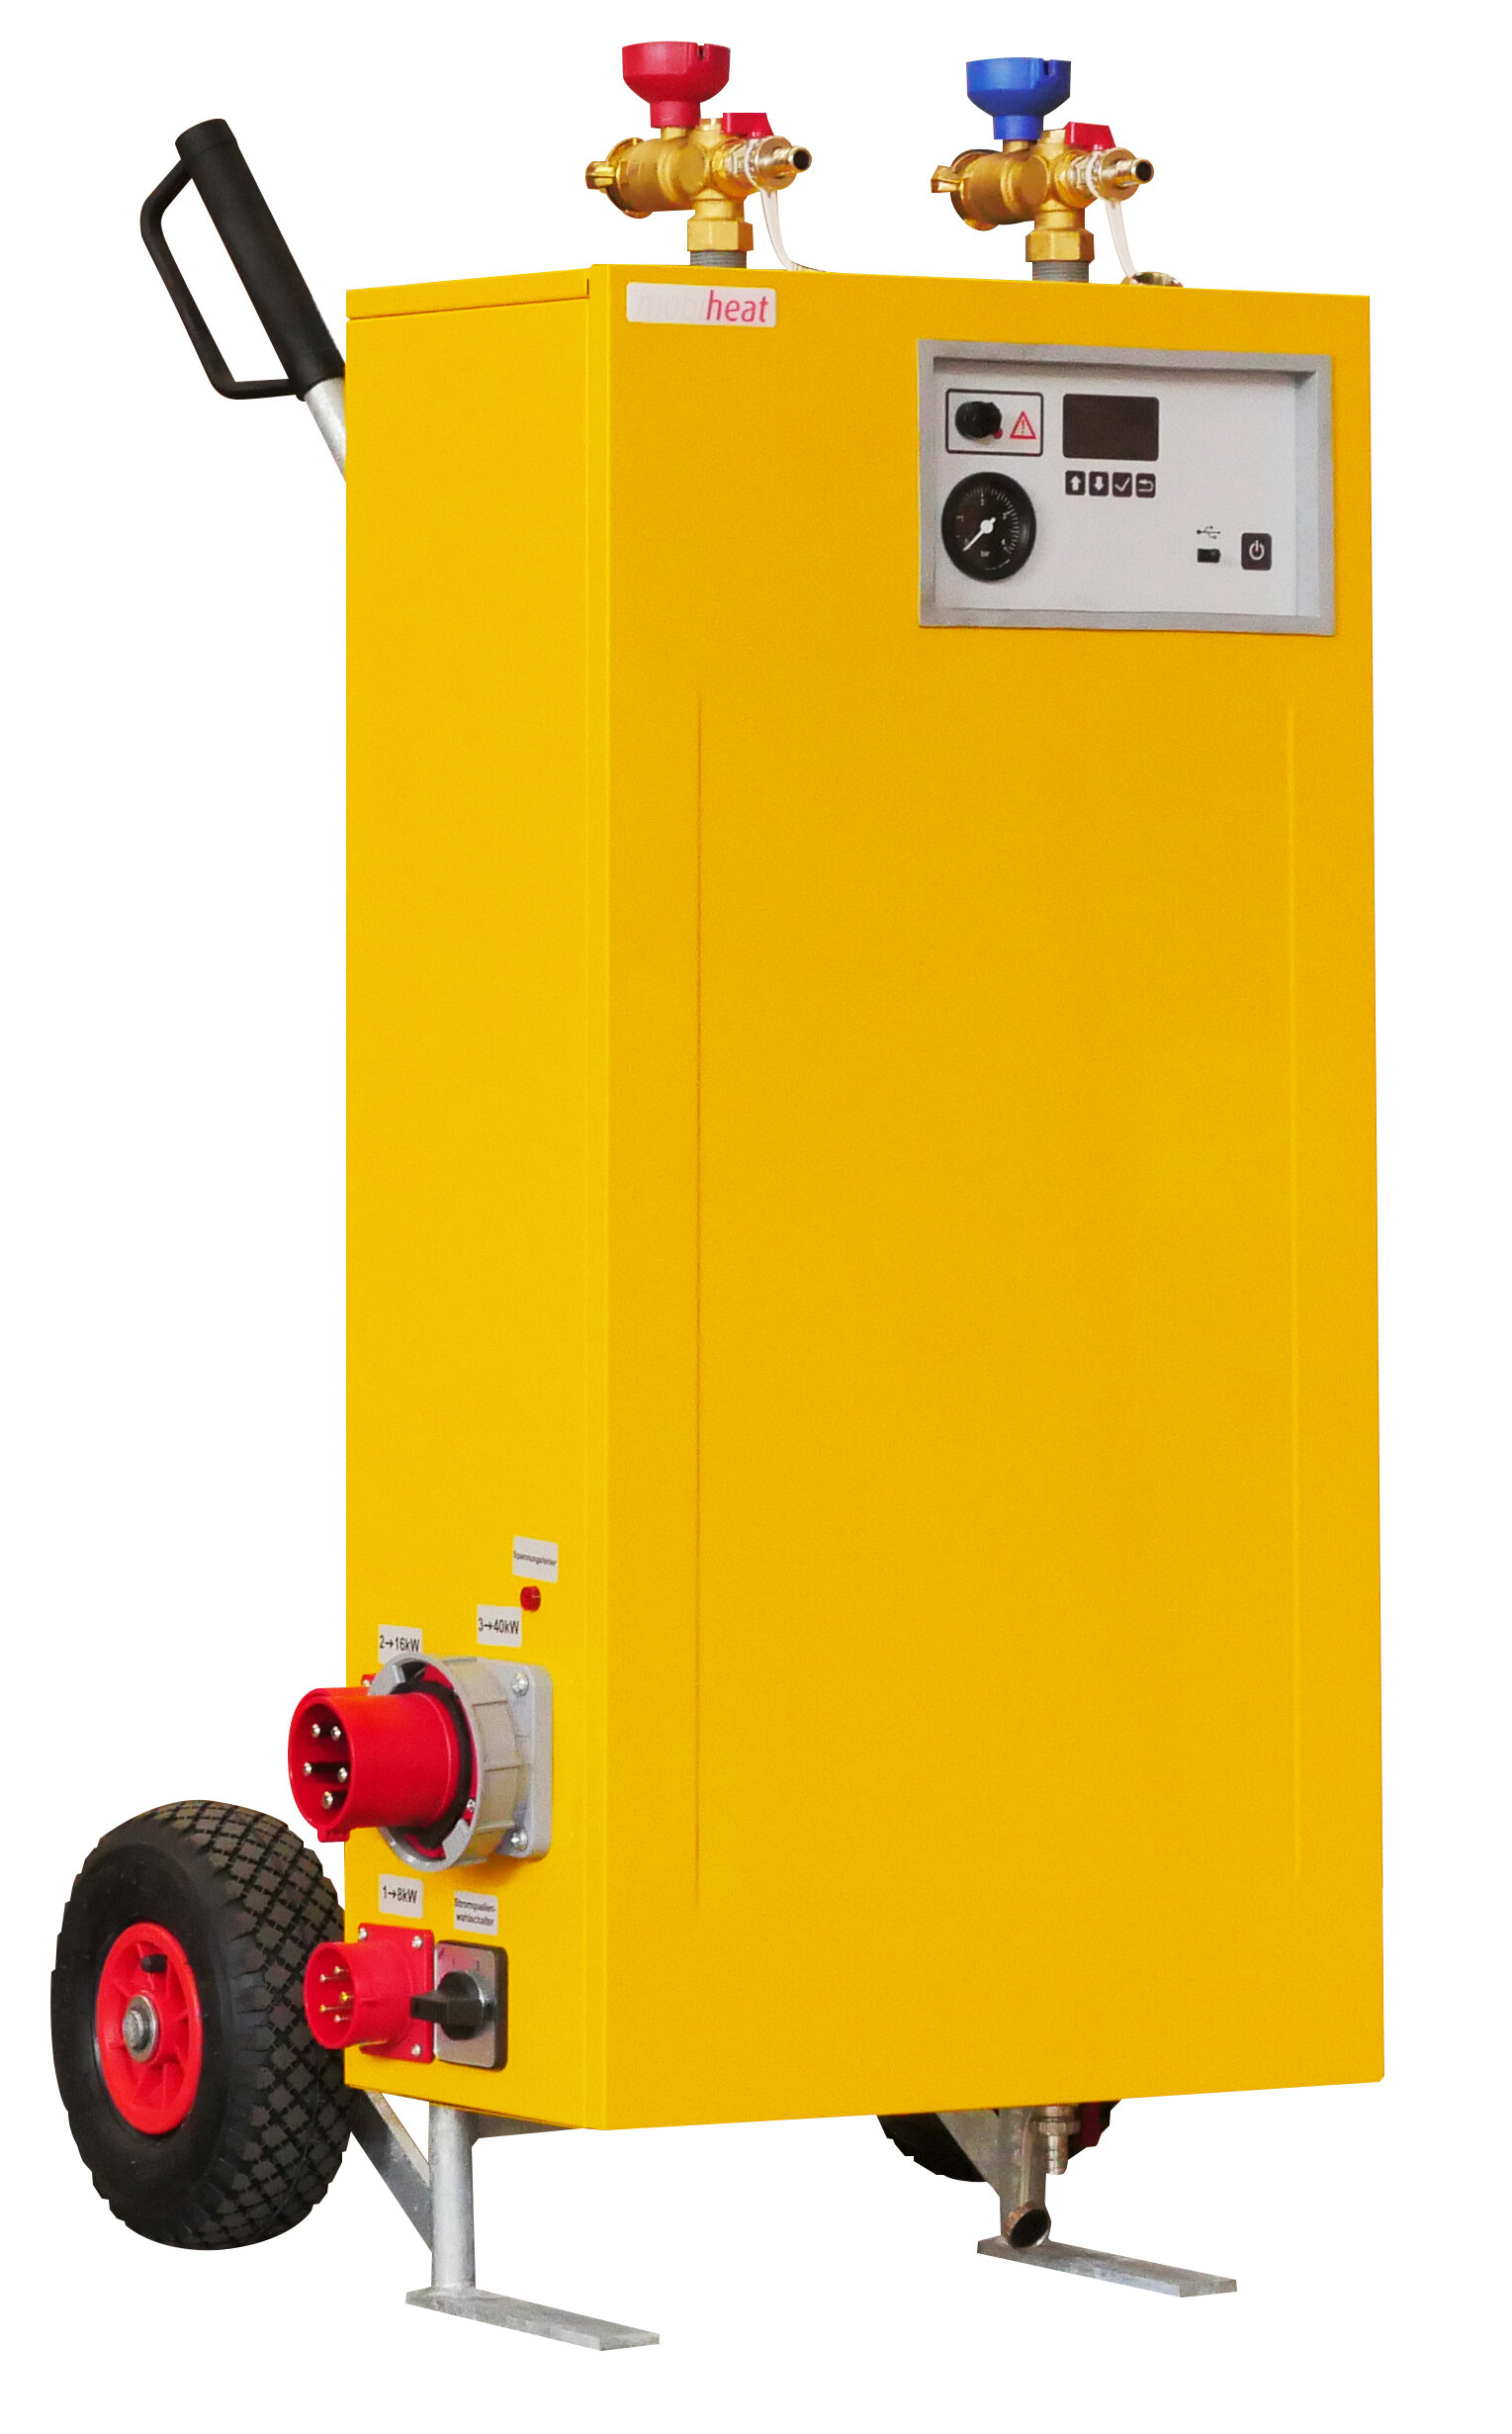 Großes Gelbes Elektroheizmobil von mobiheat frontal, rechte Seite mit Anschlüssen sichtbar | © mobiheat GmbH